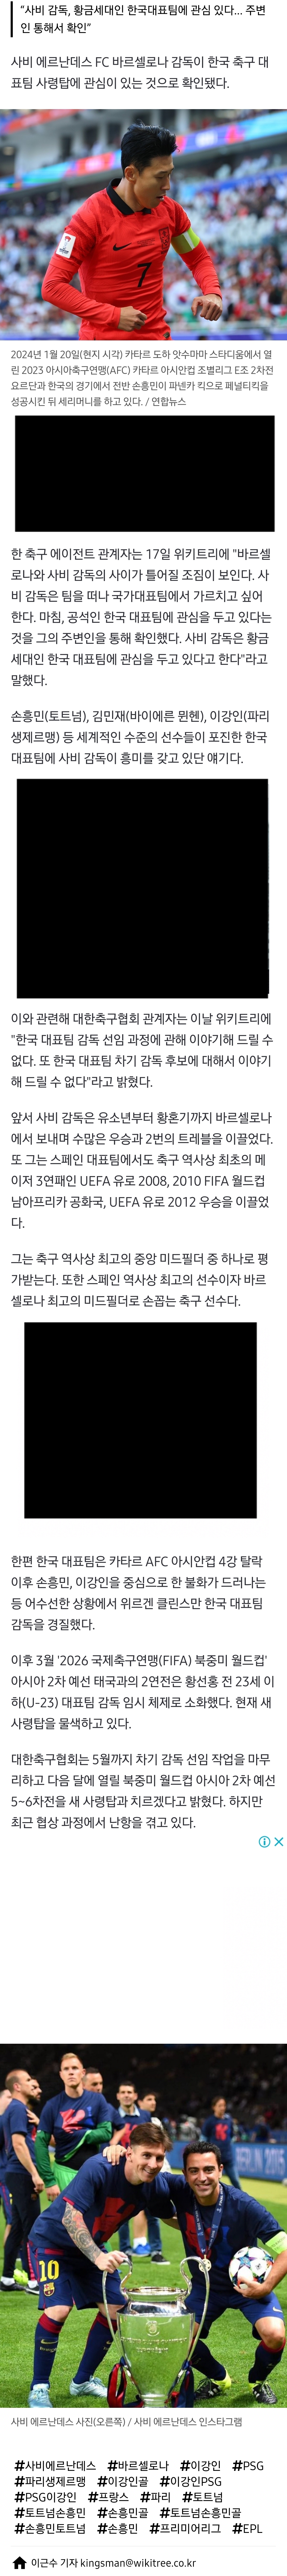 [정보/소식] [단독] 사비 에르난데스 바르셀로나 감독, 한국대표팀 맡길 원한다 | 인스티즈